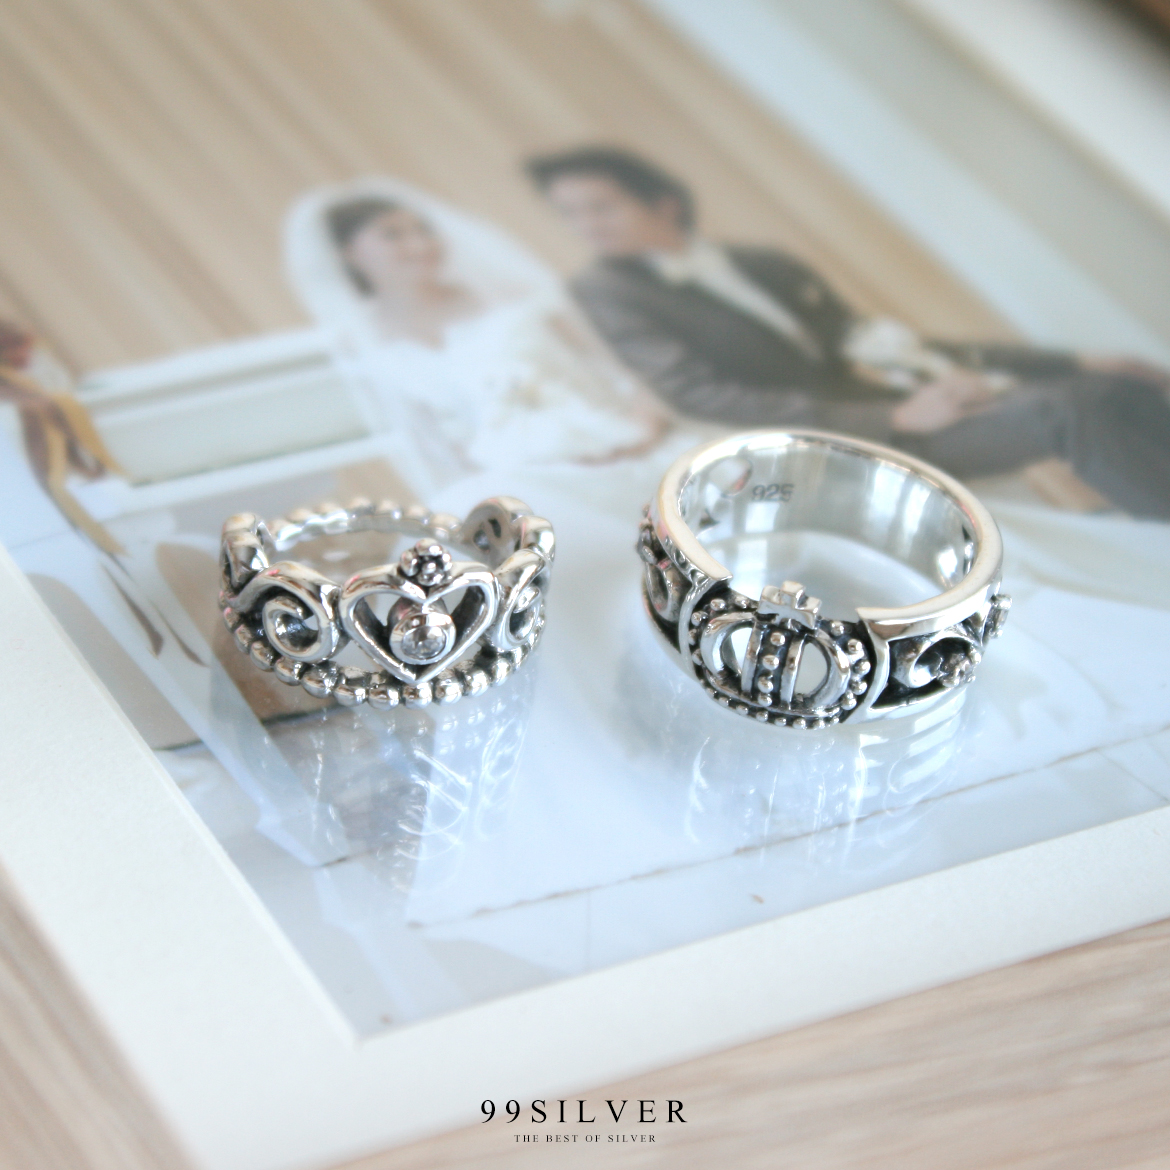 แหวนมงกุฎ เจ้าชาย-เจ้าหญิง ฝังเพชรประดับเล็กน้อยสวยงาม ดีไซน์สวยคู่กัน